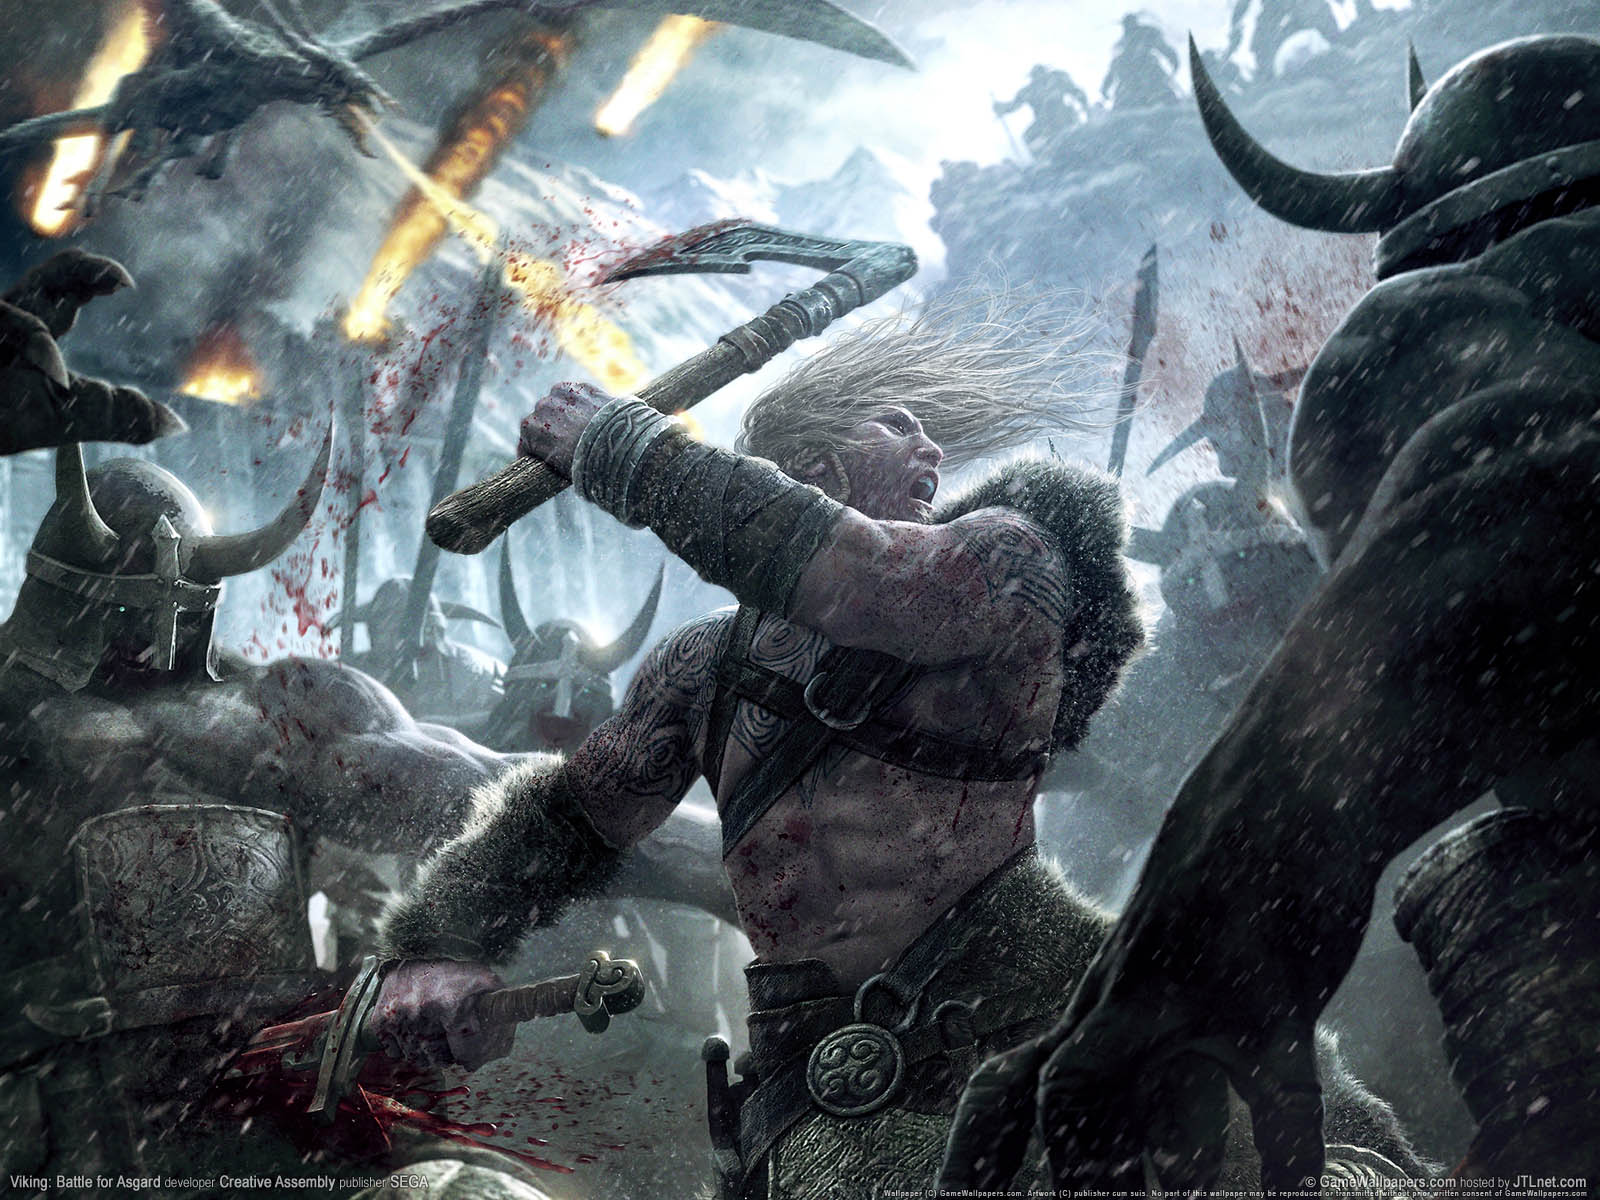 Viking%3A Battle for Asgard achtergrond 01 1600x1200